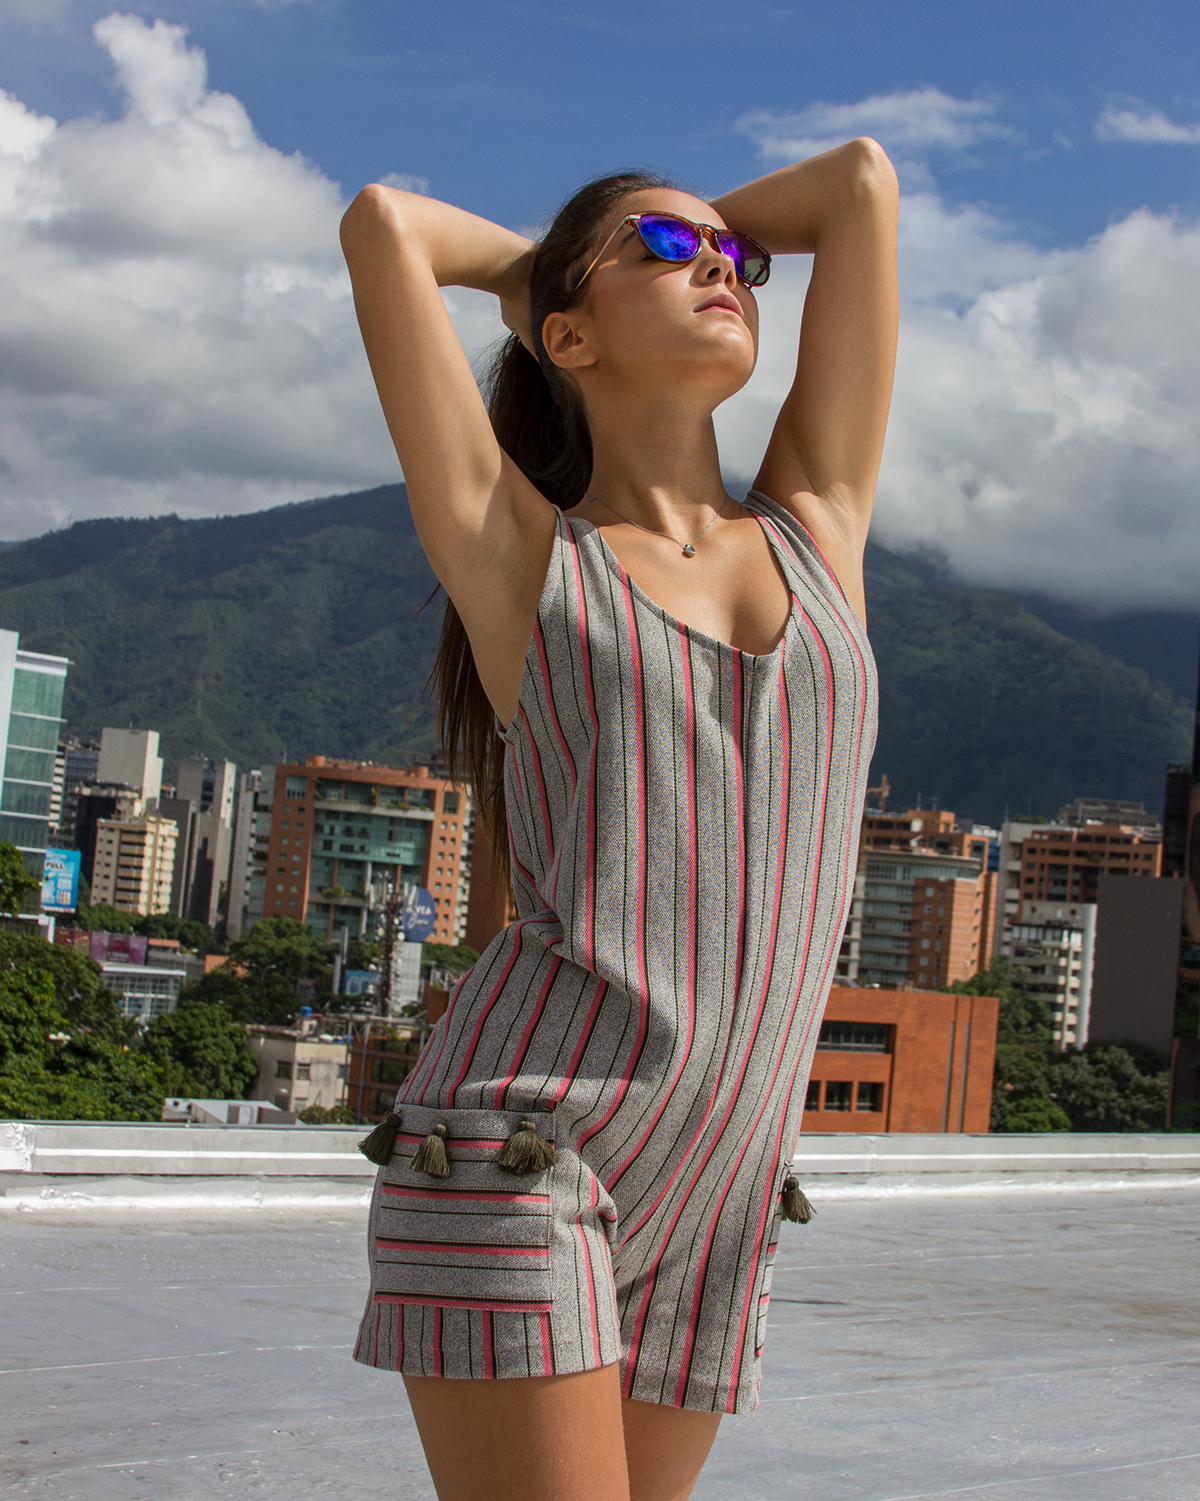 women photoshoot venezuela caracas